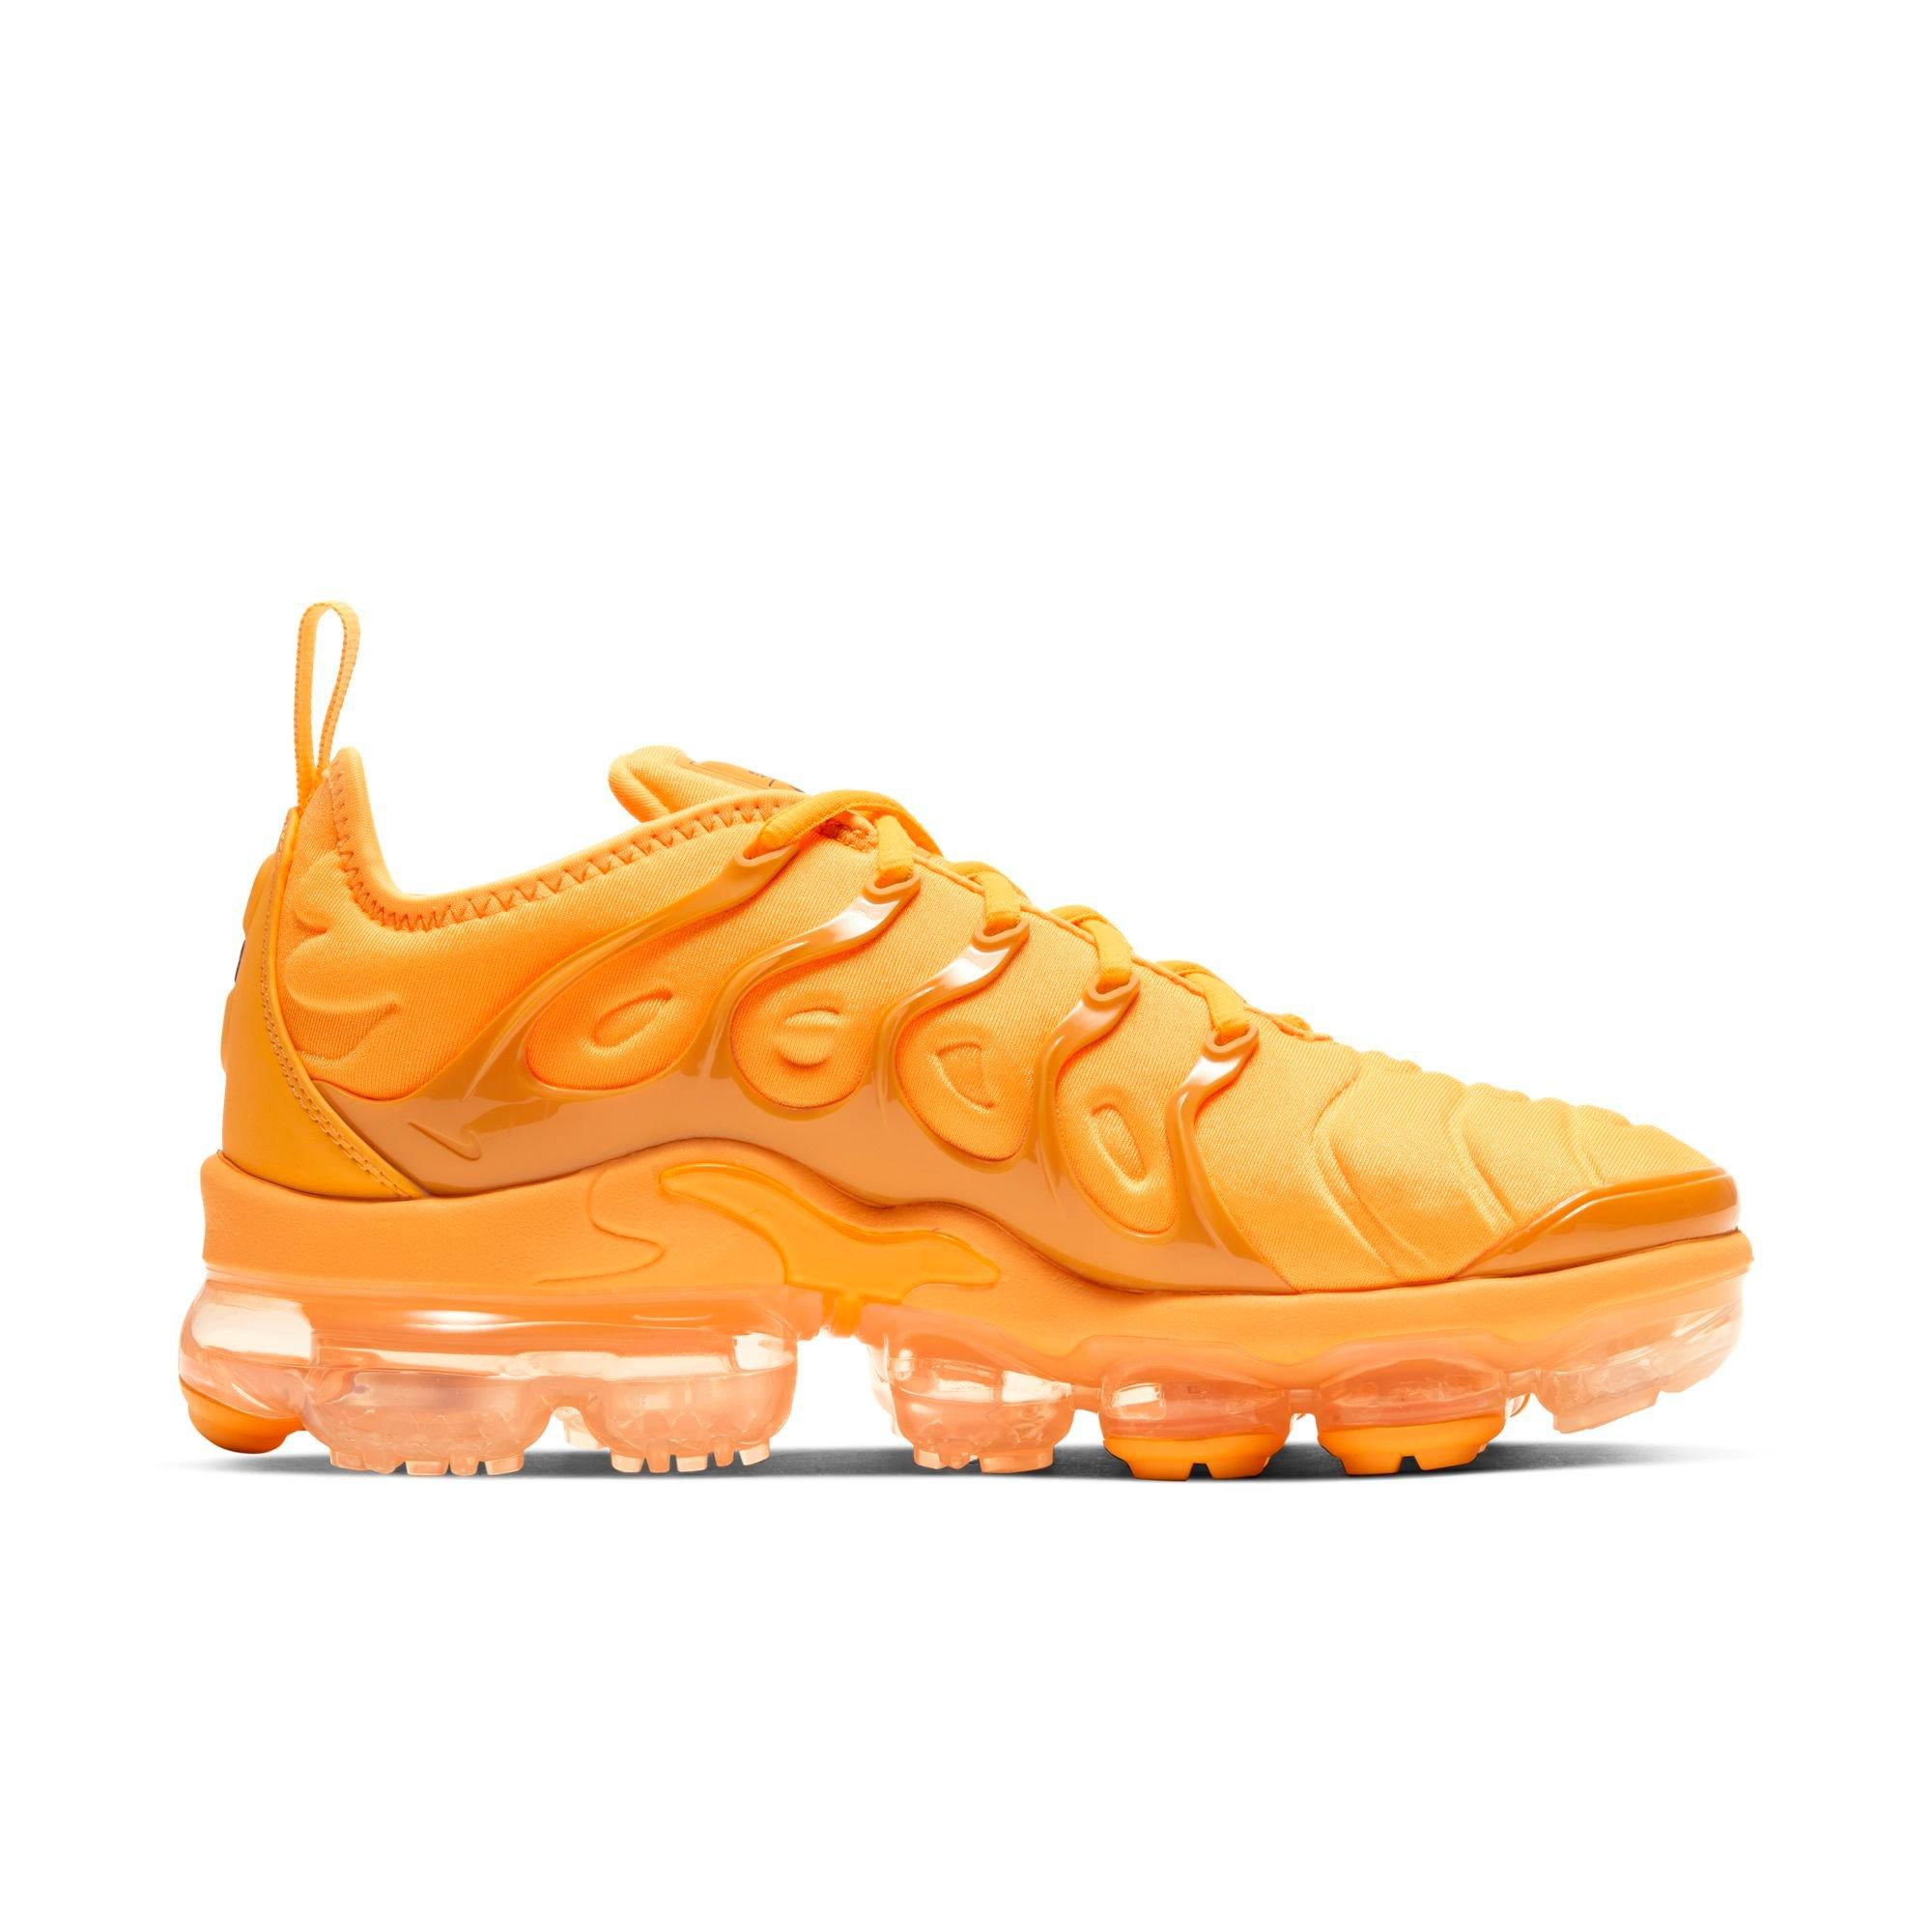 orange vapormax shoes